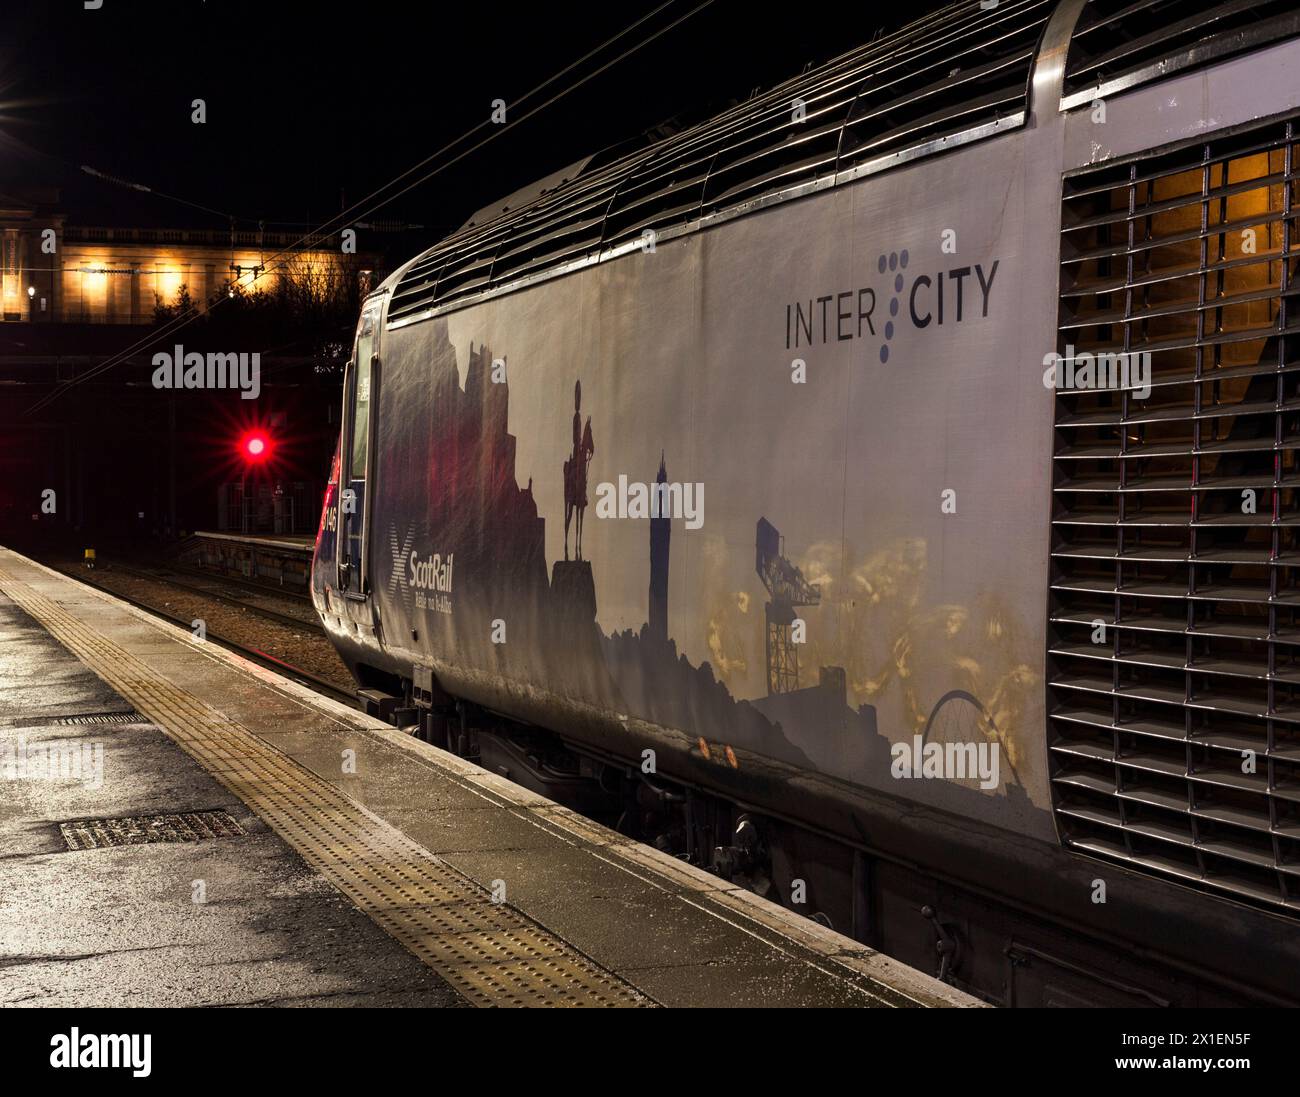 Train ScotRail Inter7City attendant à la gare de Waverley d'Édimbourg dans l'obscurité tôt le matin avec des signaux de danger rouges Banque D'Images